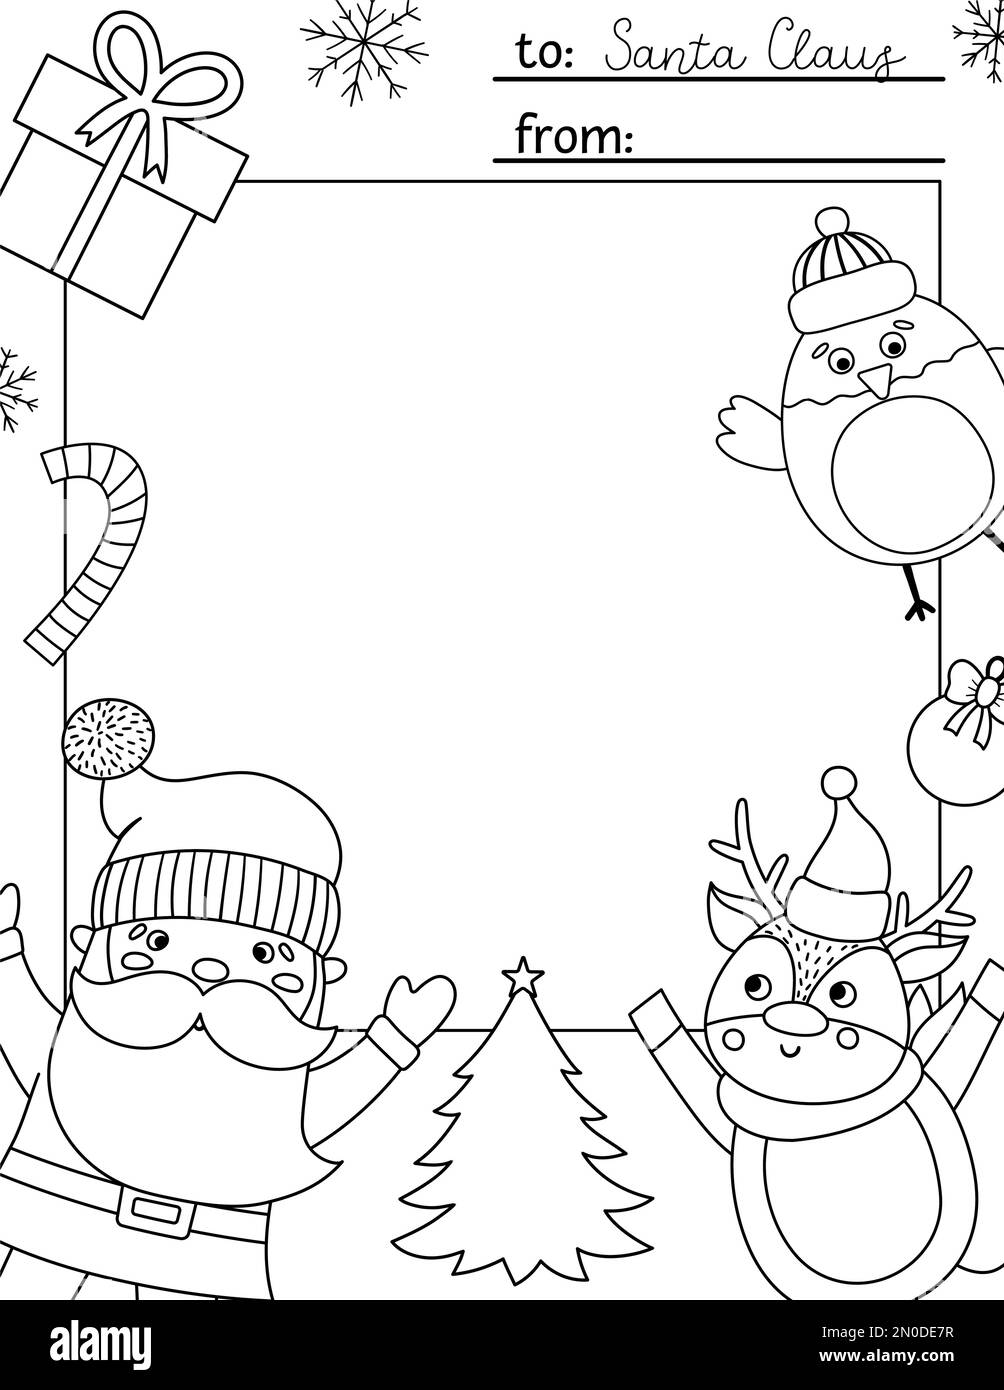 Vektor-Schwarzweiß-Briefvorlage für den Weihnachtsmann. Niedliches Weihnachtskartendesign. Winterliche Rahmengestaltung für Kinder mit lustigen Figuren. Festlicher Backgro Stock Vektor